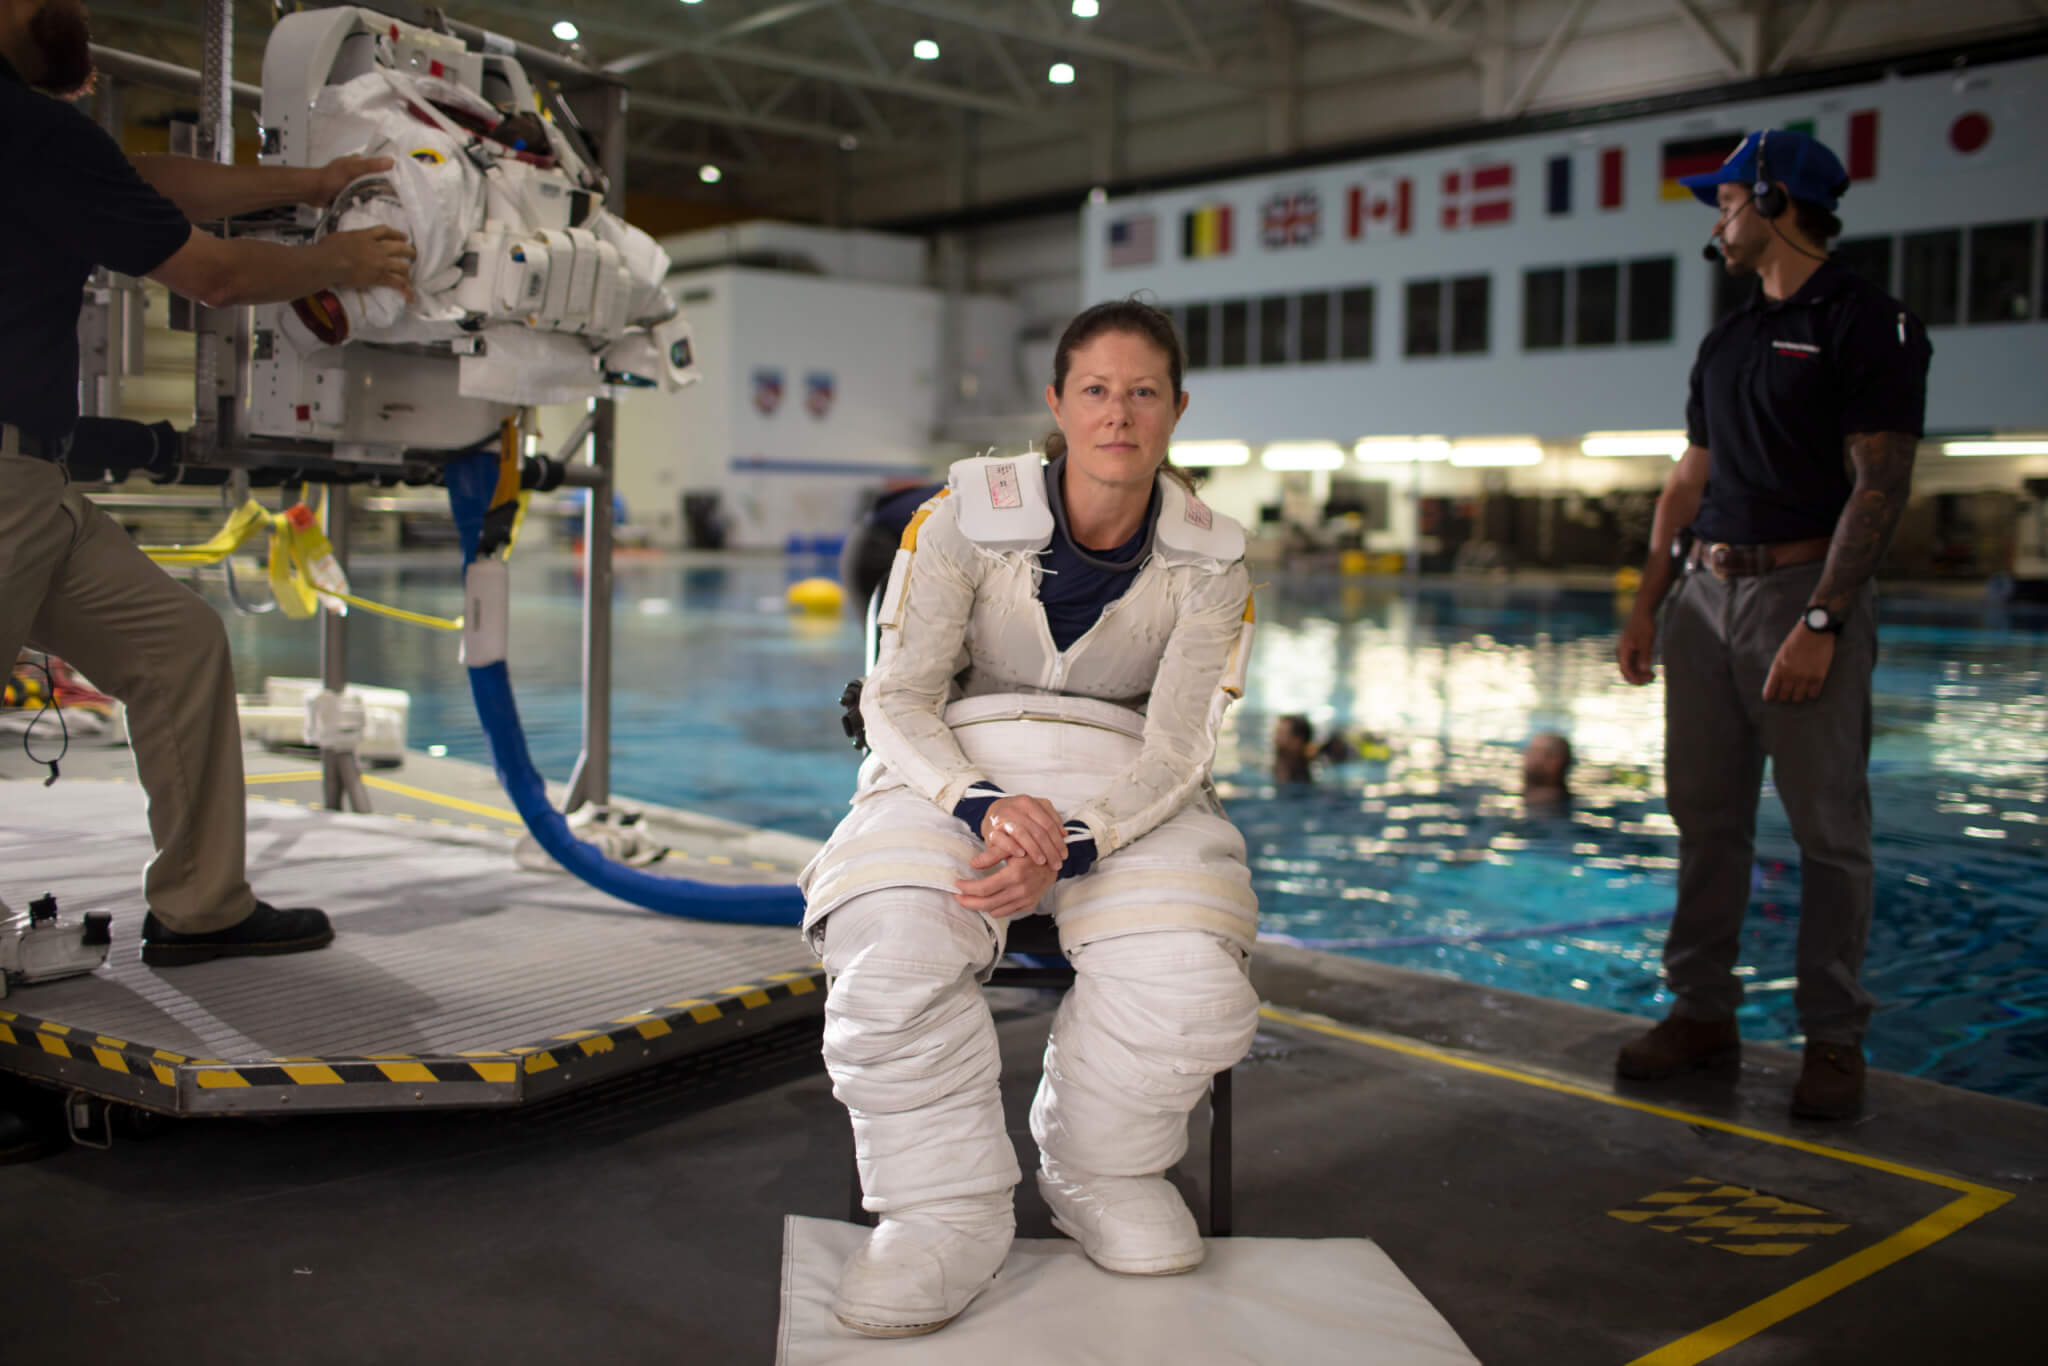 Absolwent chemii wyrusza w przestrzeń kosmiczną w ramach trzeciej misji NASA